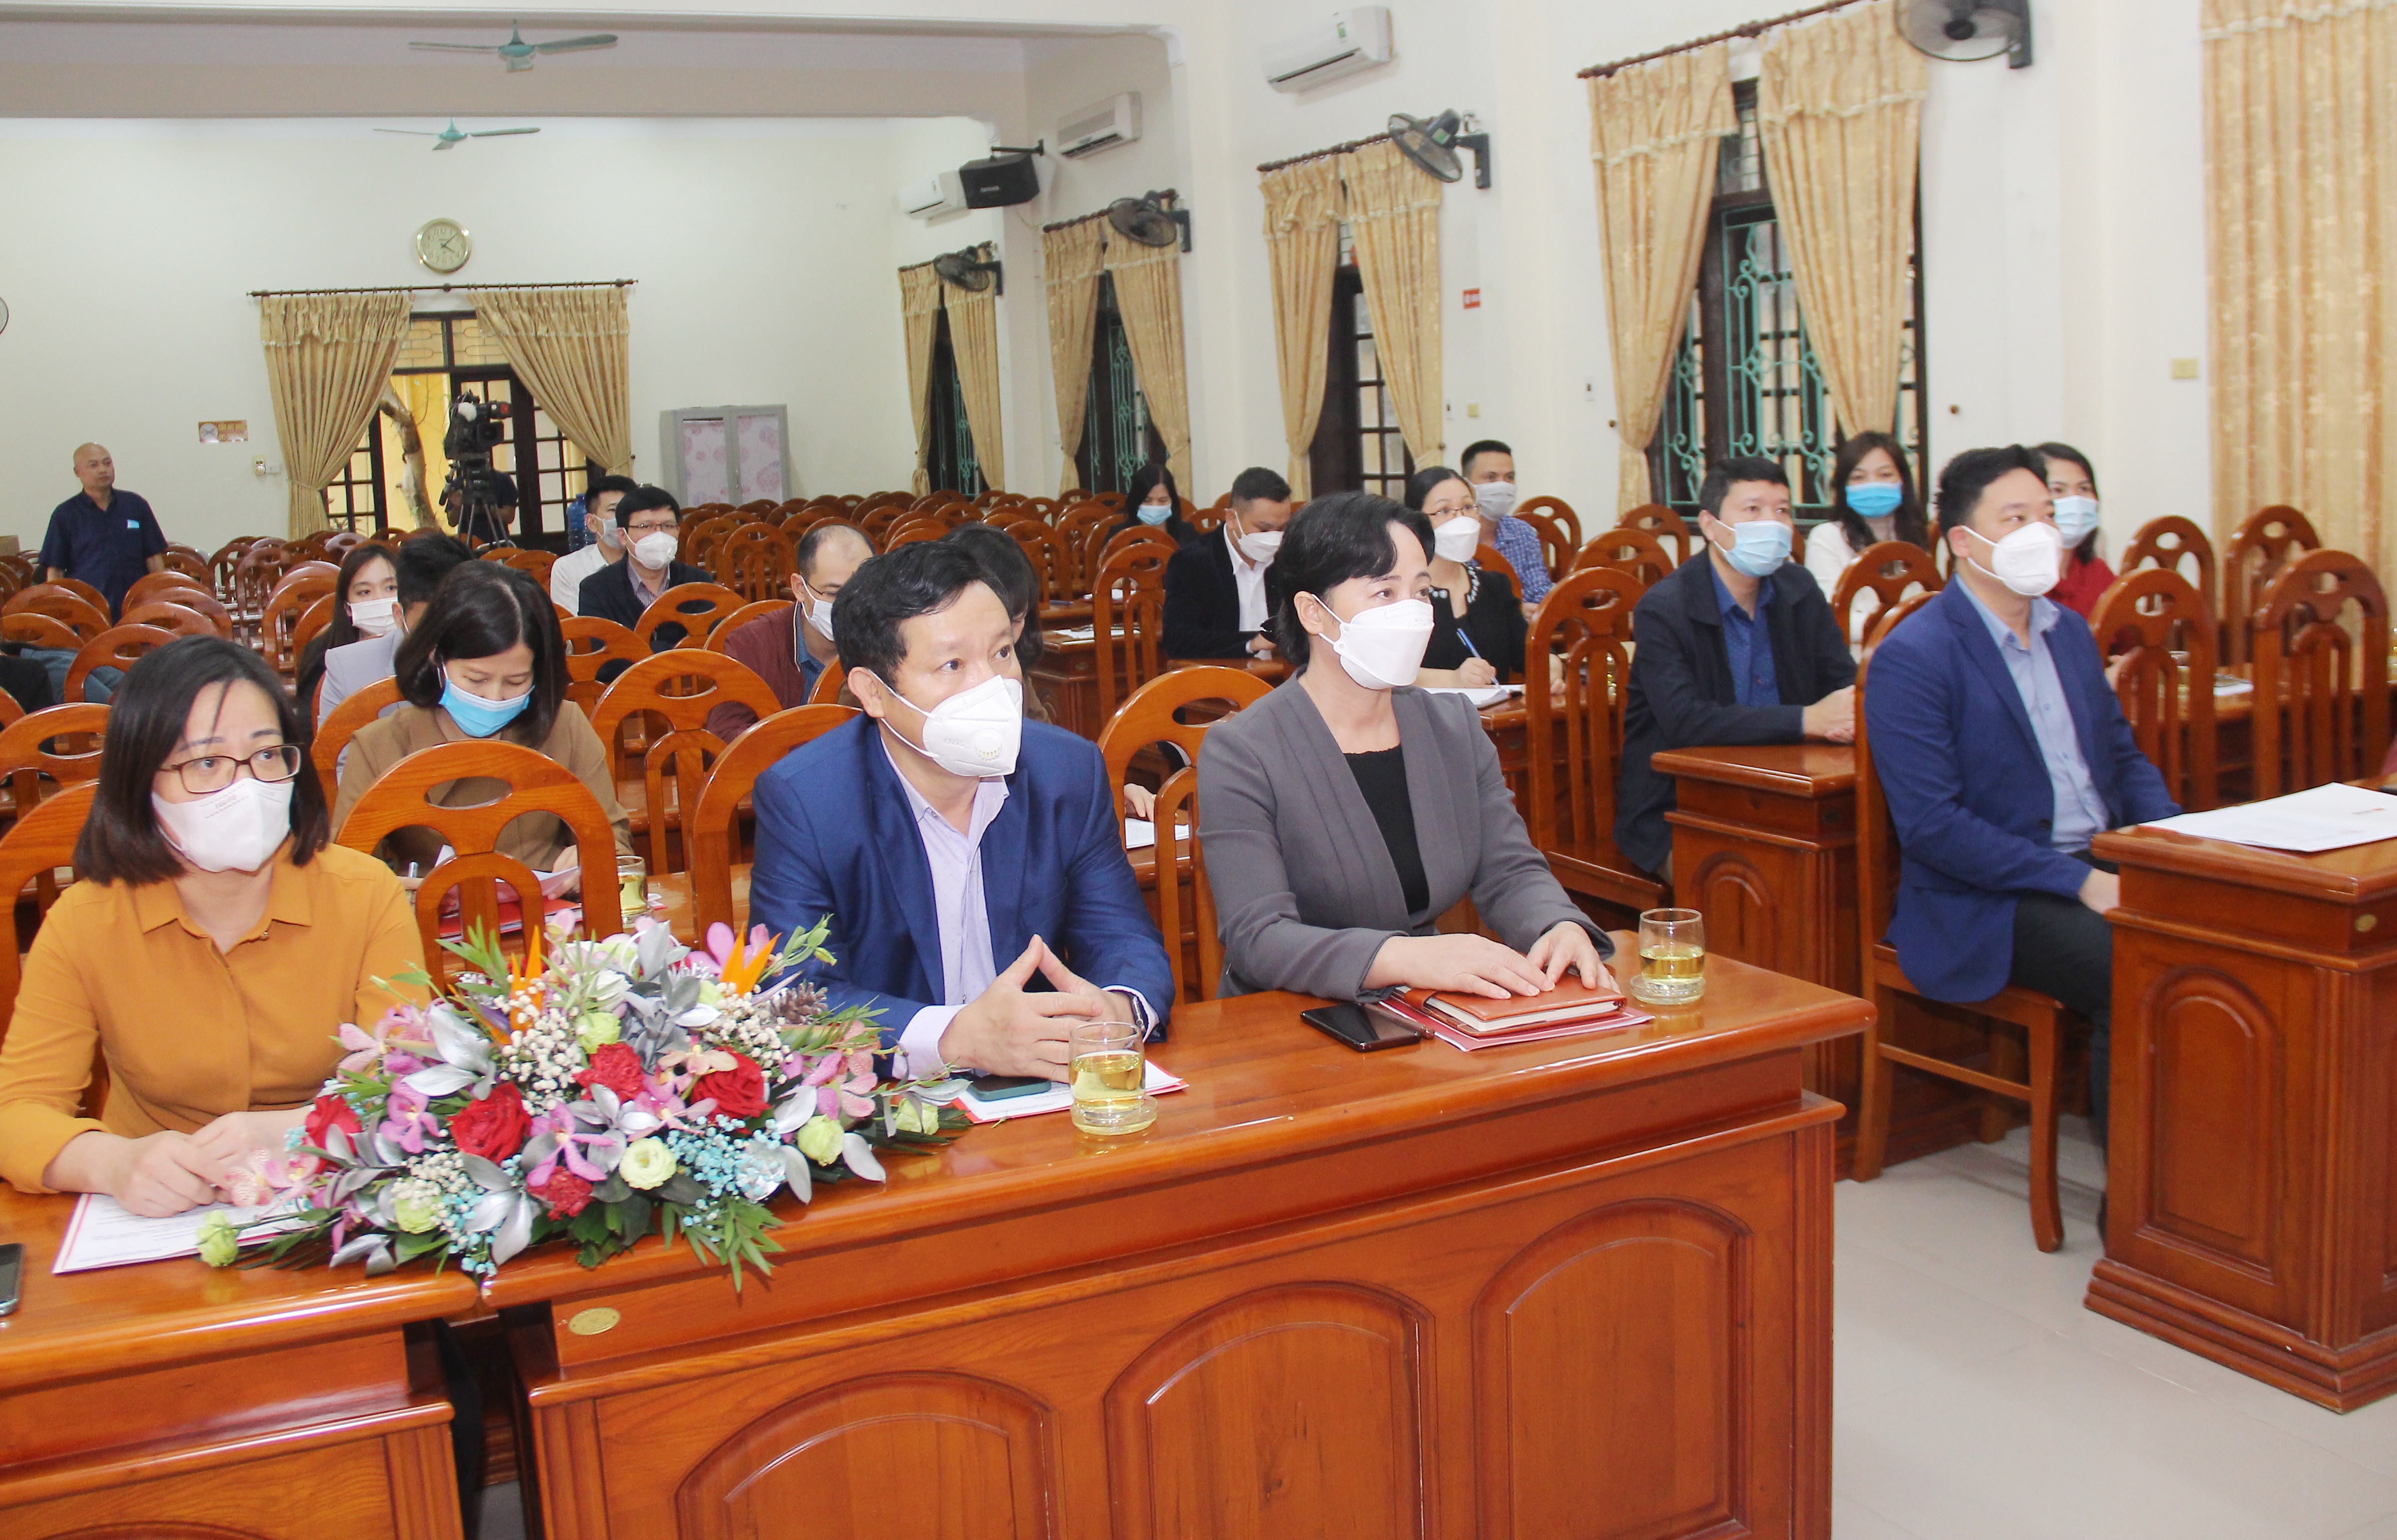 Các đại biểu tham dự lễ công bố Quyết định thành lập chi bộ Ngân hàng TMCP Hàng Hải, chi nhánh Nghệ An. Ảnh: Mai Hoa